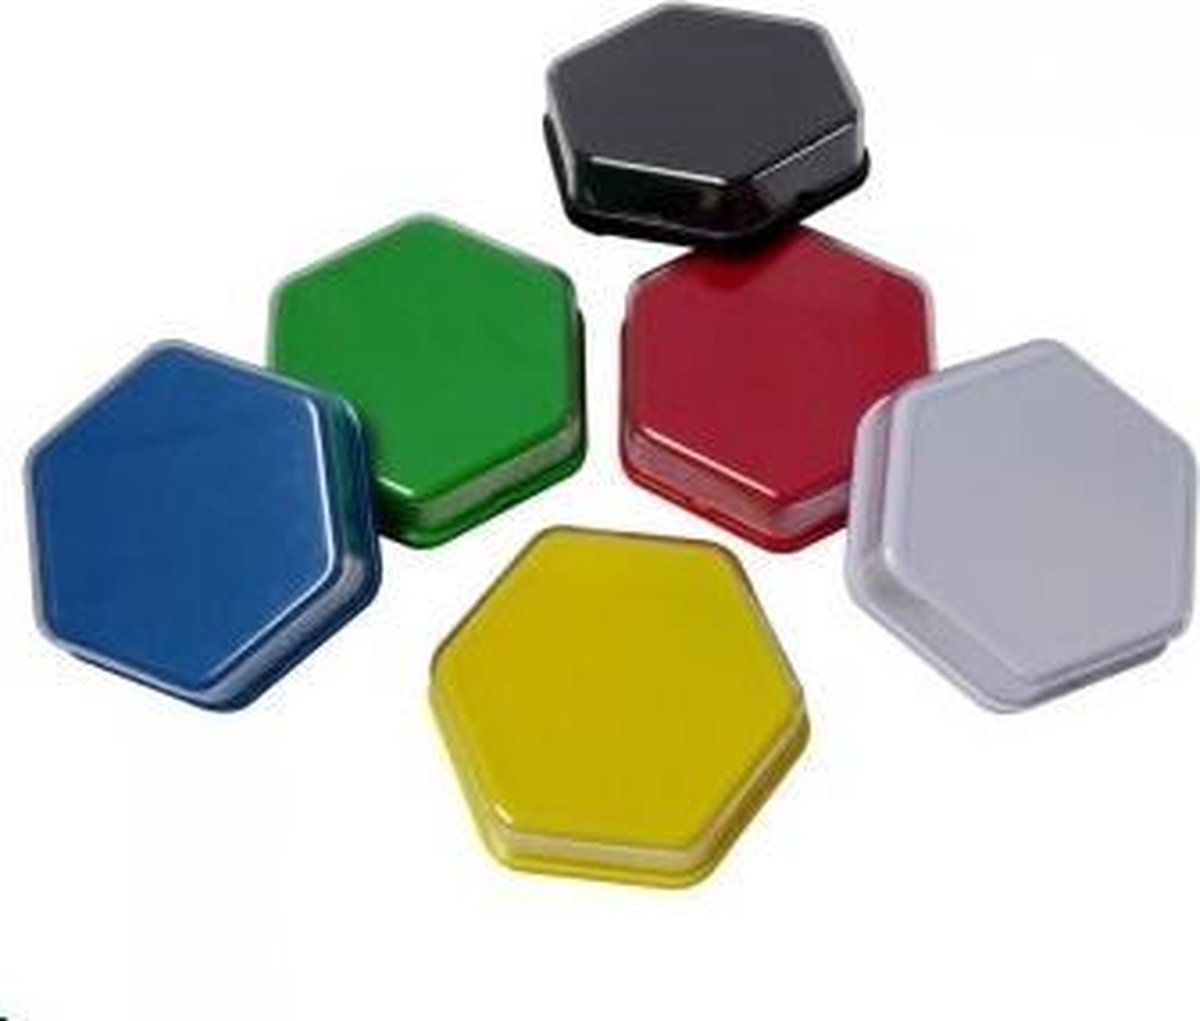 Praatknoppen zeshoekige vorm - luister en spraakactiviteiten voor kinderen - voor wisselende afbeeldingen - set van 6 kleuren